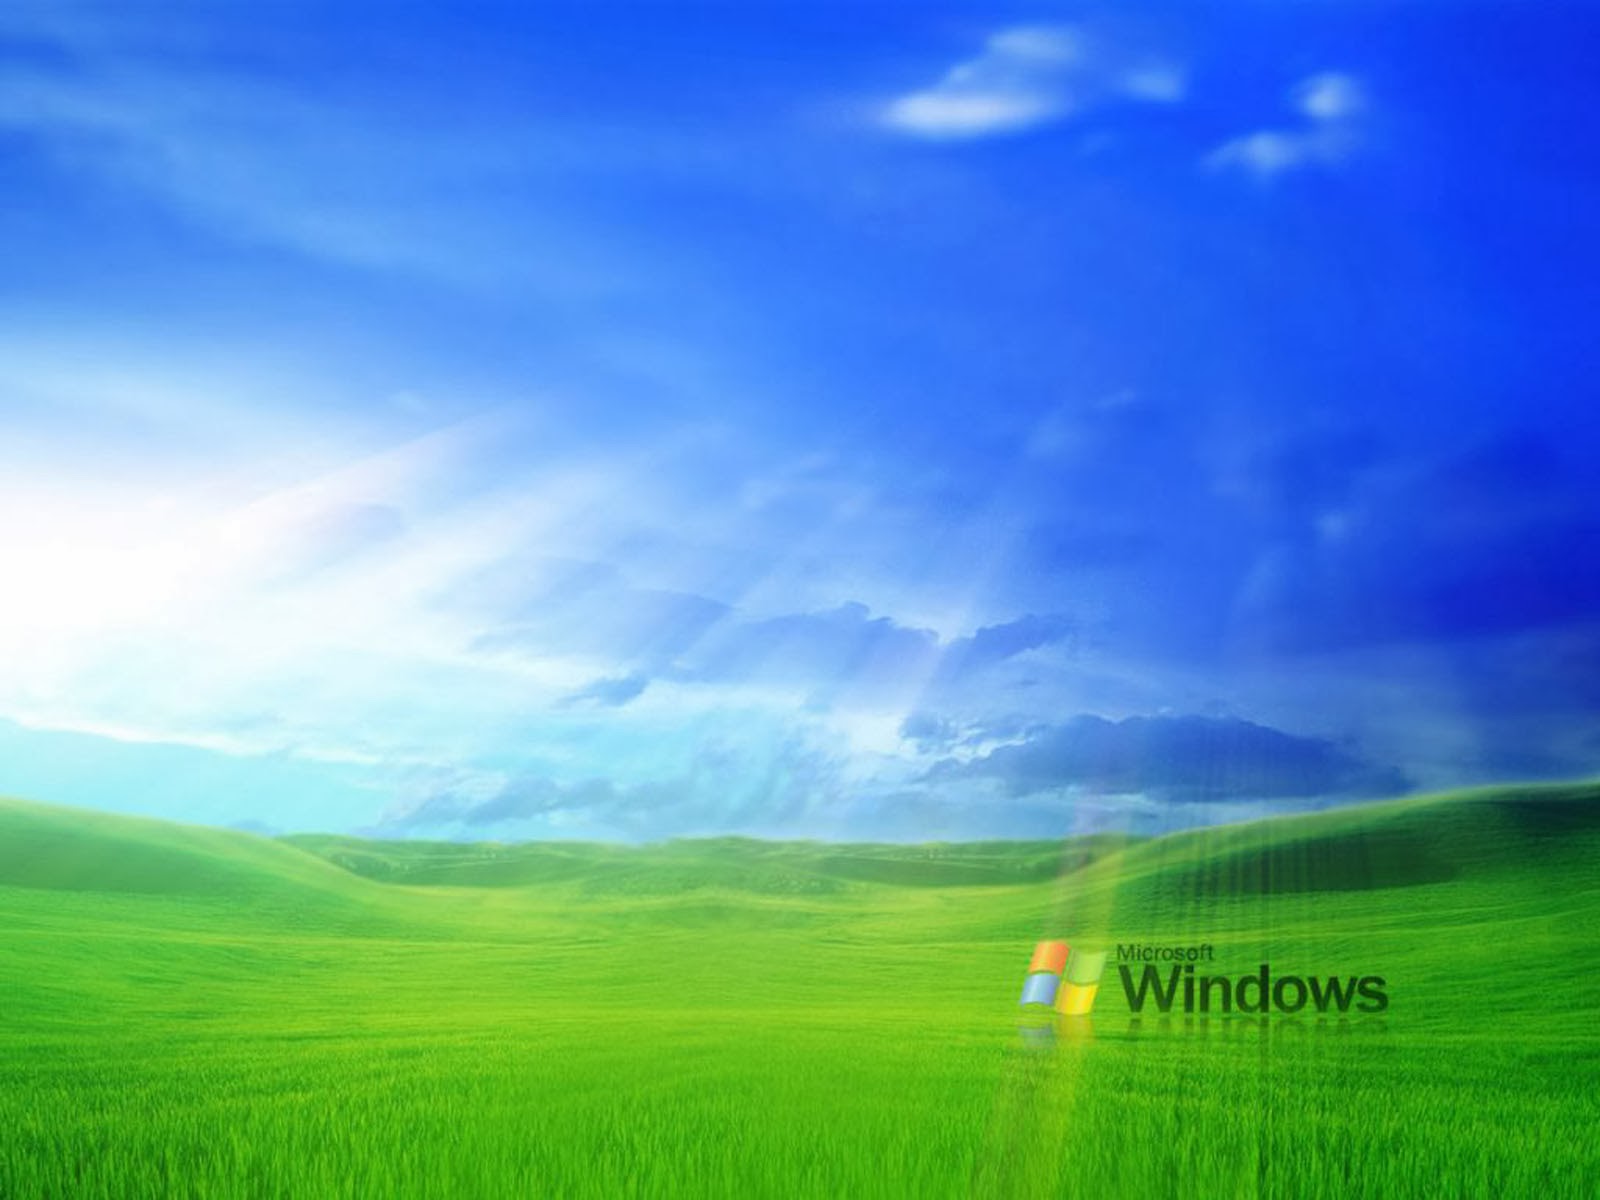 Khám phá hình nền Windows lá cỏ đẹp mắt, mang lại cảm giác bình yên cho bàn làm việc của bạn. Tận hưởng sự thanh bình và tươi mát mỗi khi mở khóa màn hình với hình nền độc đáo này.